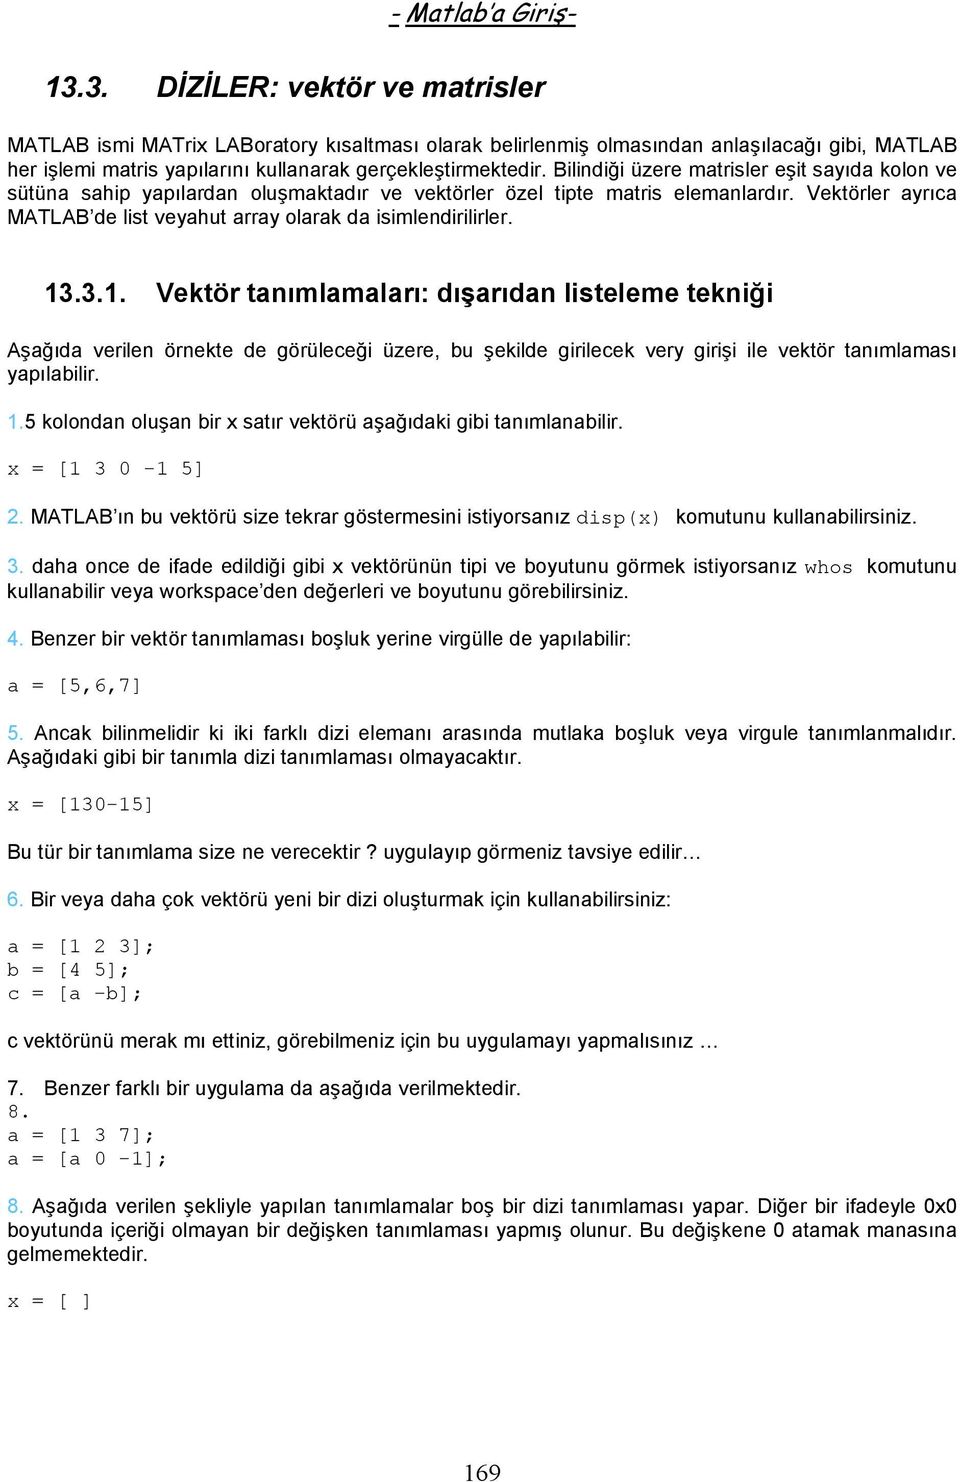 13.3.1. Vektör tanımlamaları: dışarıdan listeleme tekniği Aşağıda verilen örnekte de görüleceği üzere, bu şekilde girilecek very girişi ile vektör tanımlaması yapılabilir. 1.